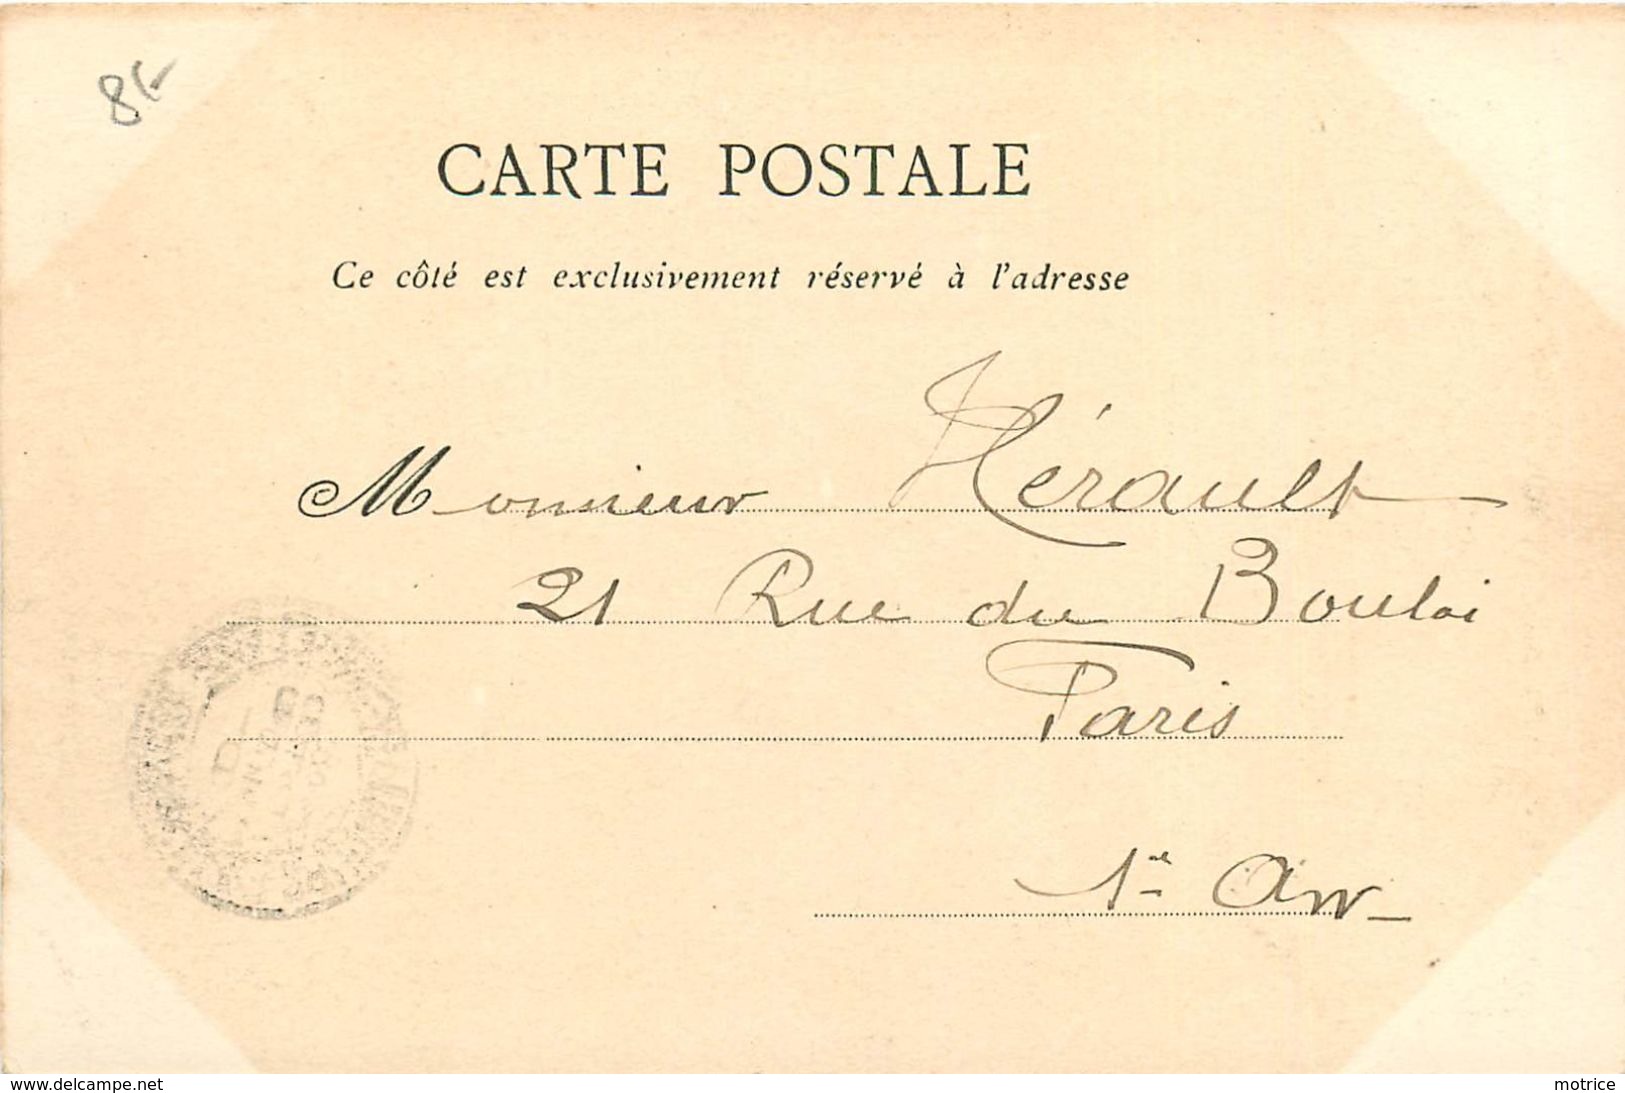 VOYAGE EN RUSSIE 1902 - Vive Loubet,carte Illustrée. - Receptions